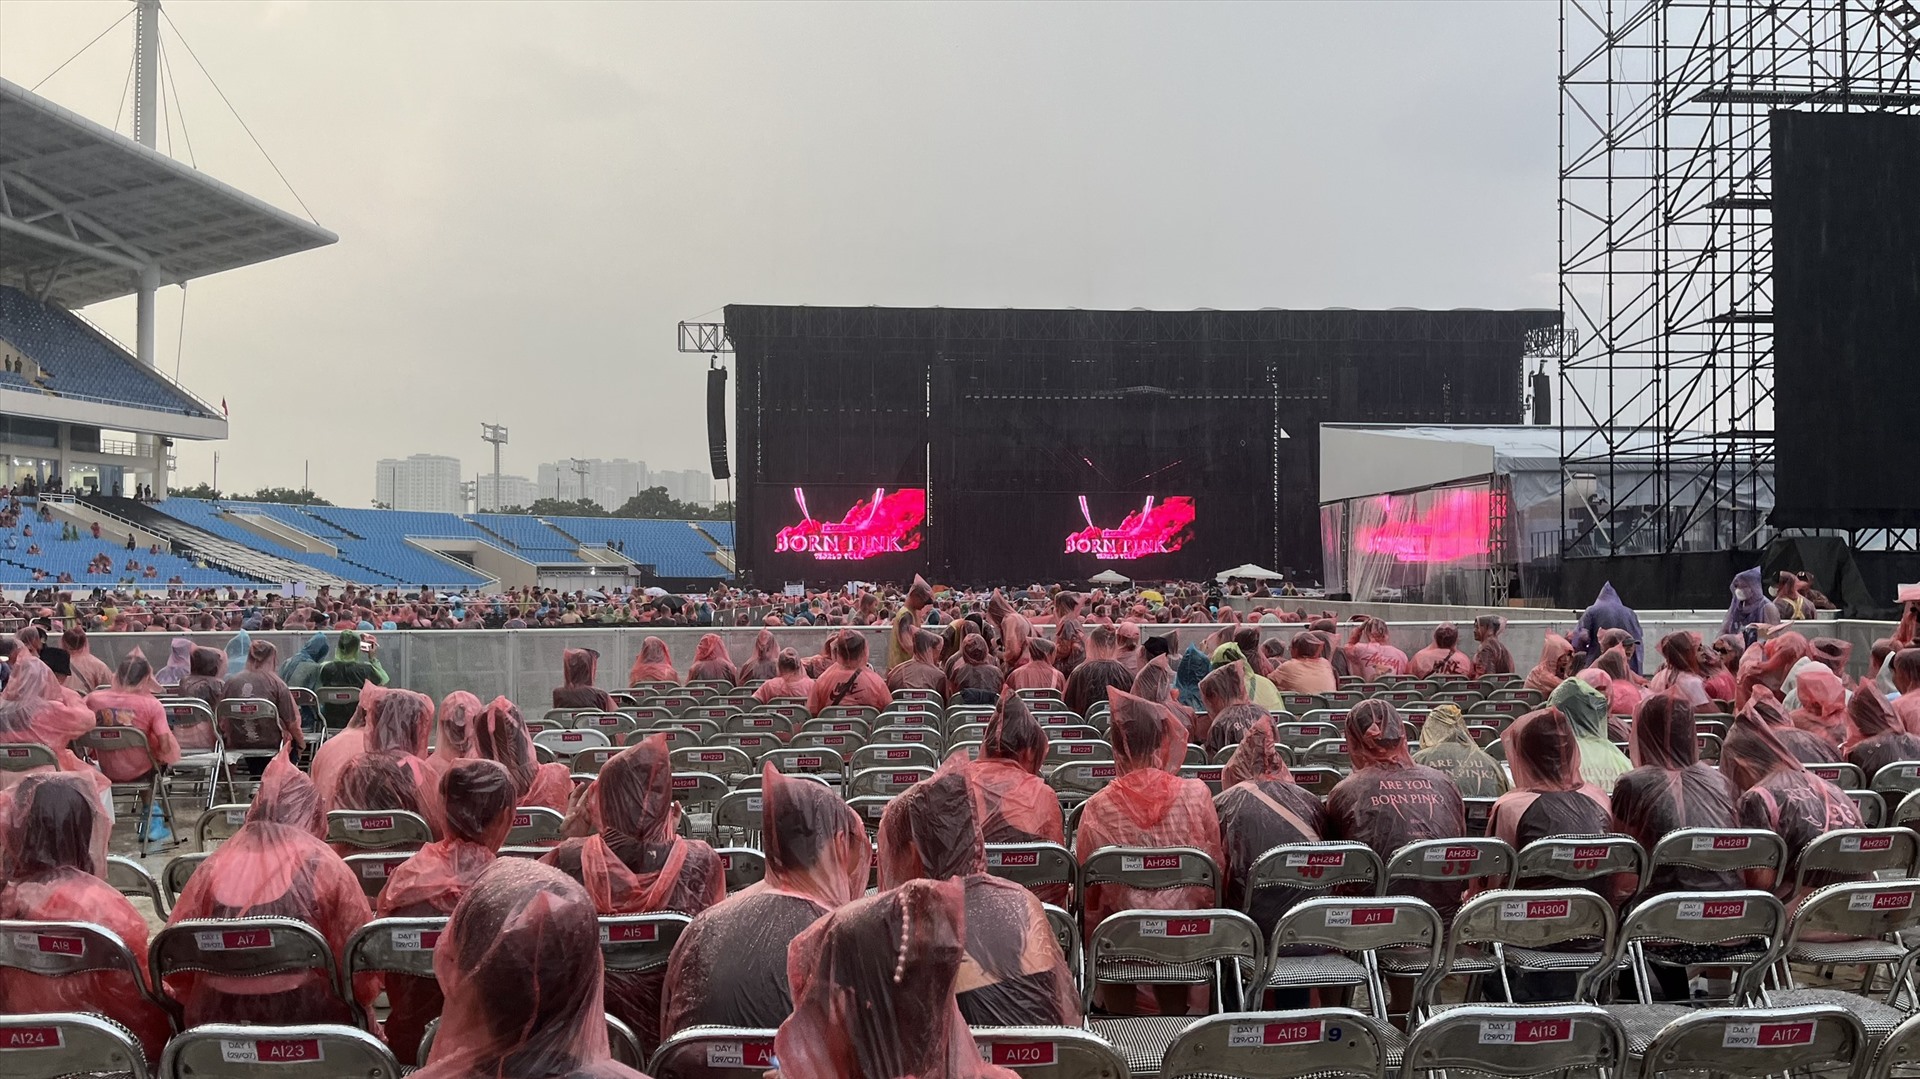 Trời mưa lớn khi chỉ còn 2 tiếng là concert bắt đầu. Ảnh: Chi Trần.